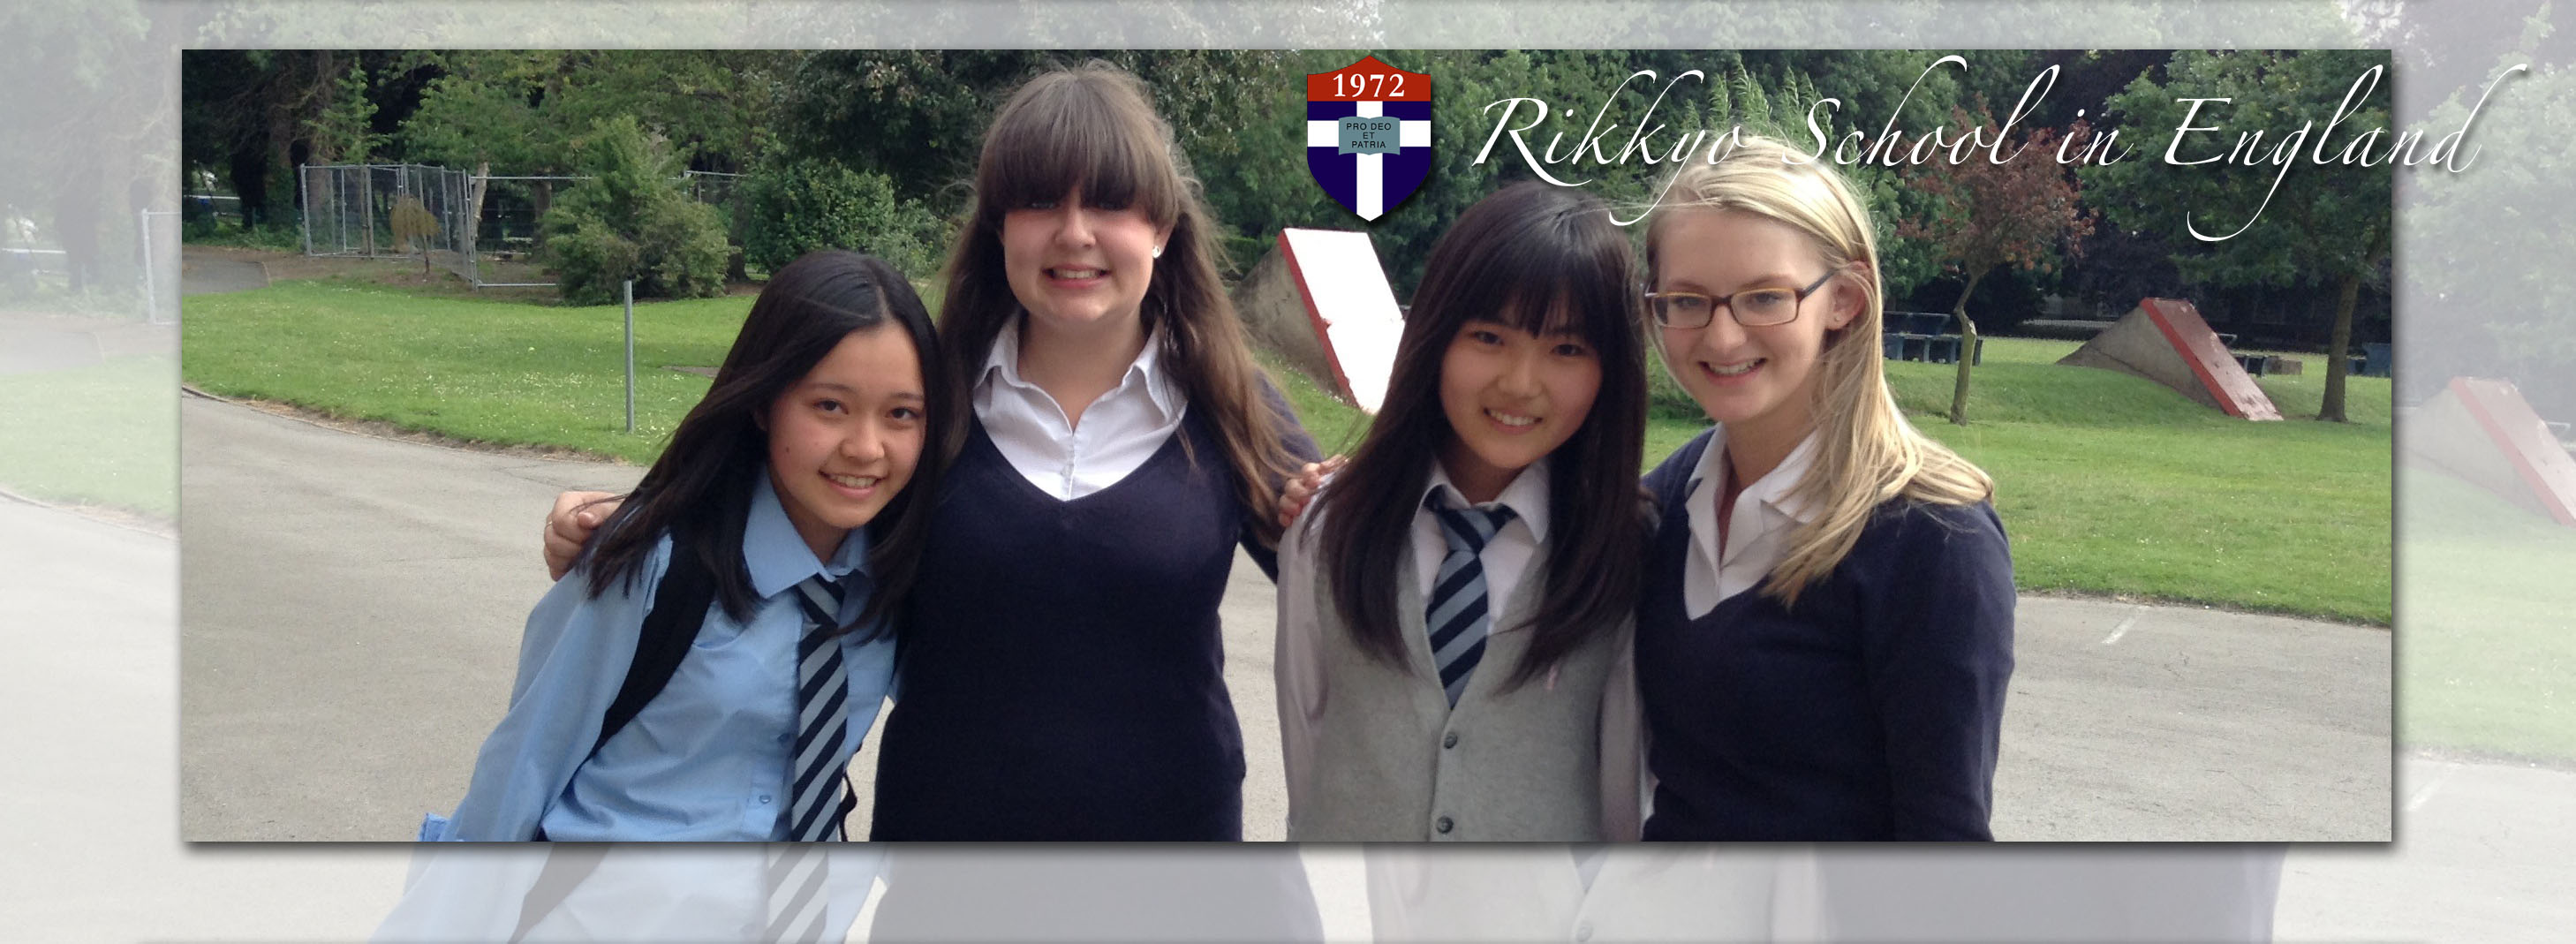 rikkyo school in england